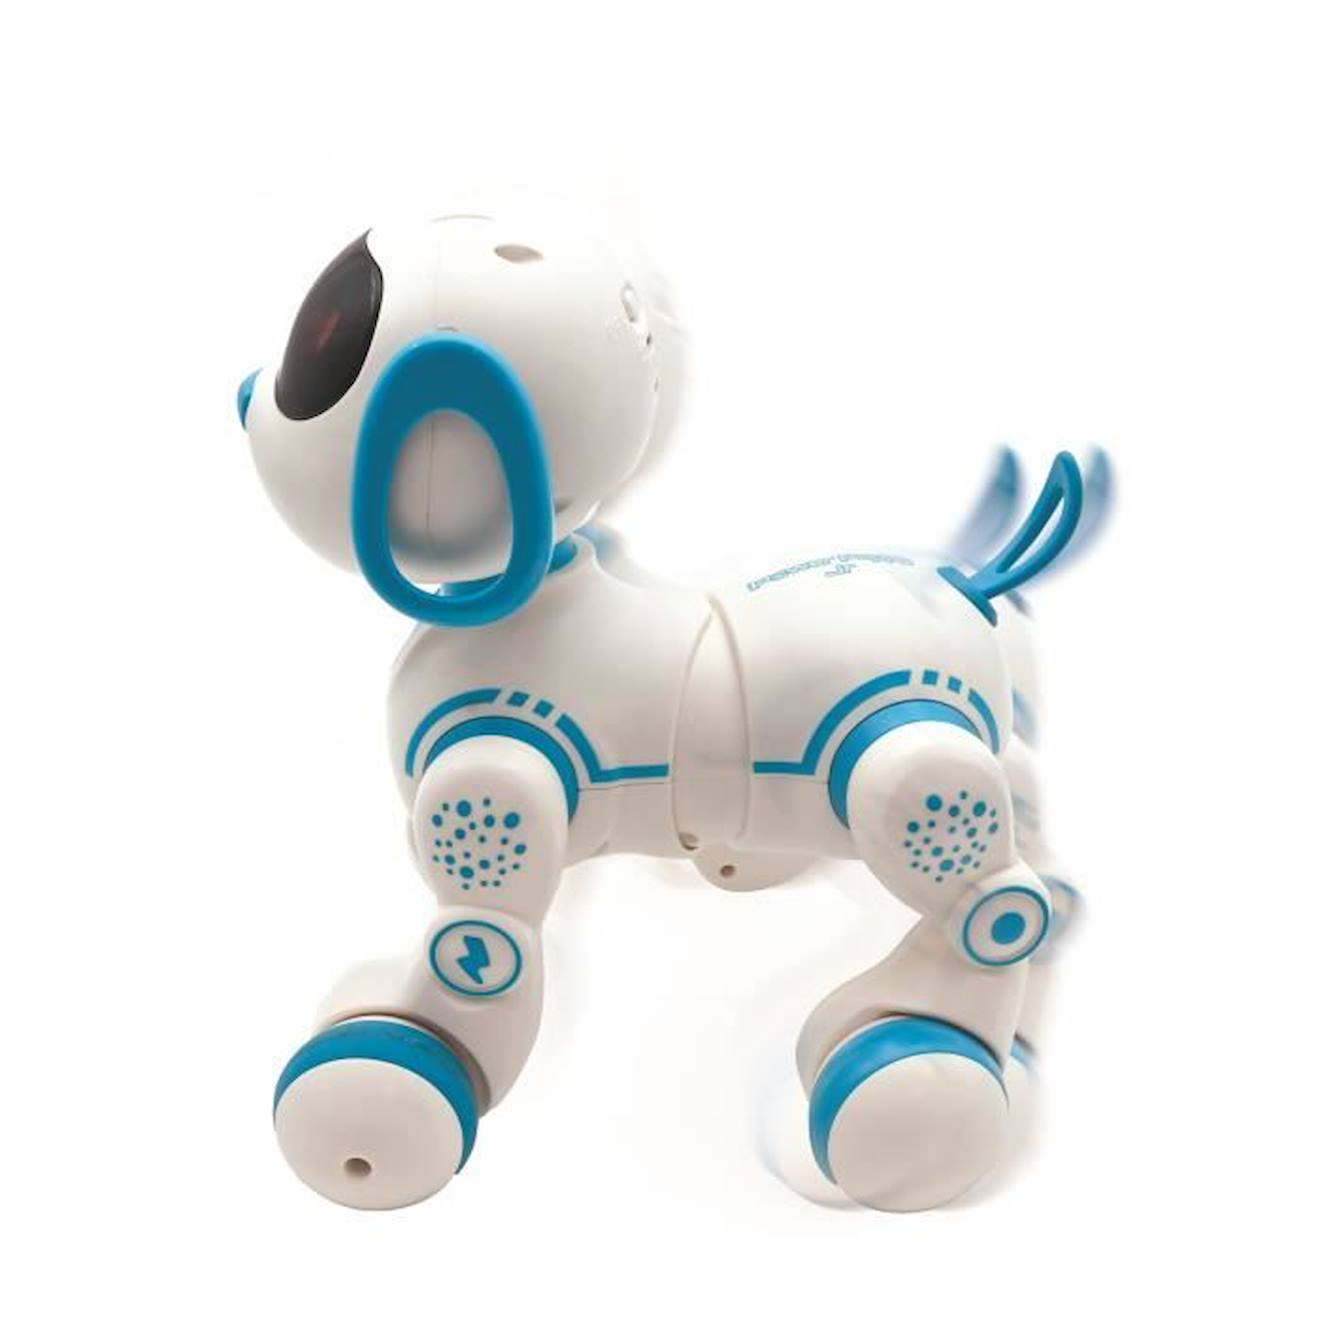 Offrir Un chien robot en cadeau